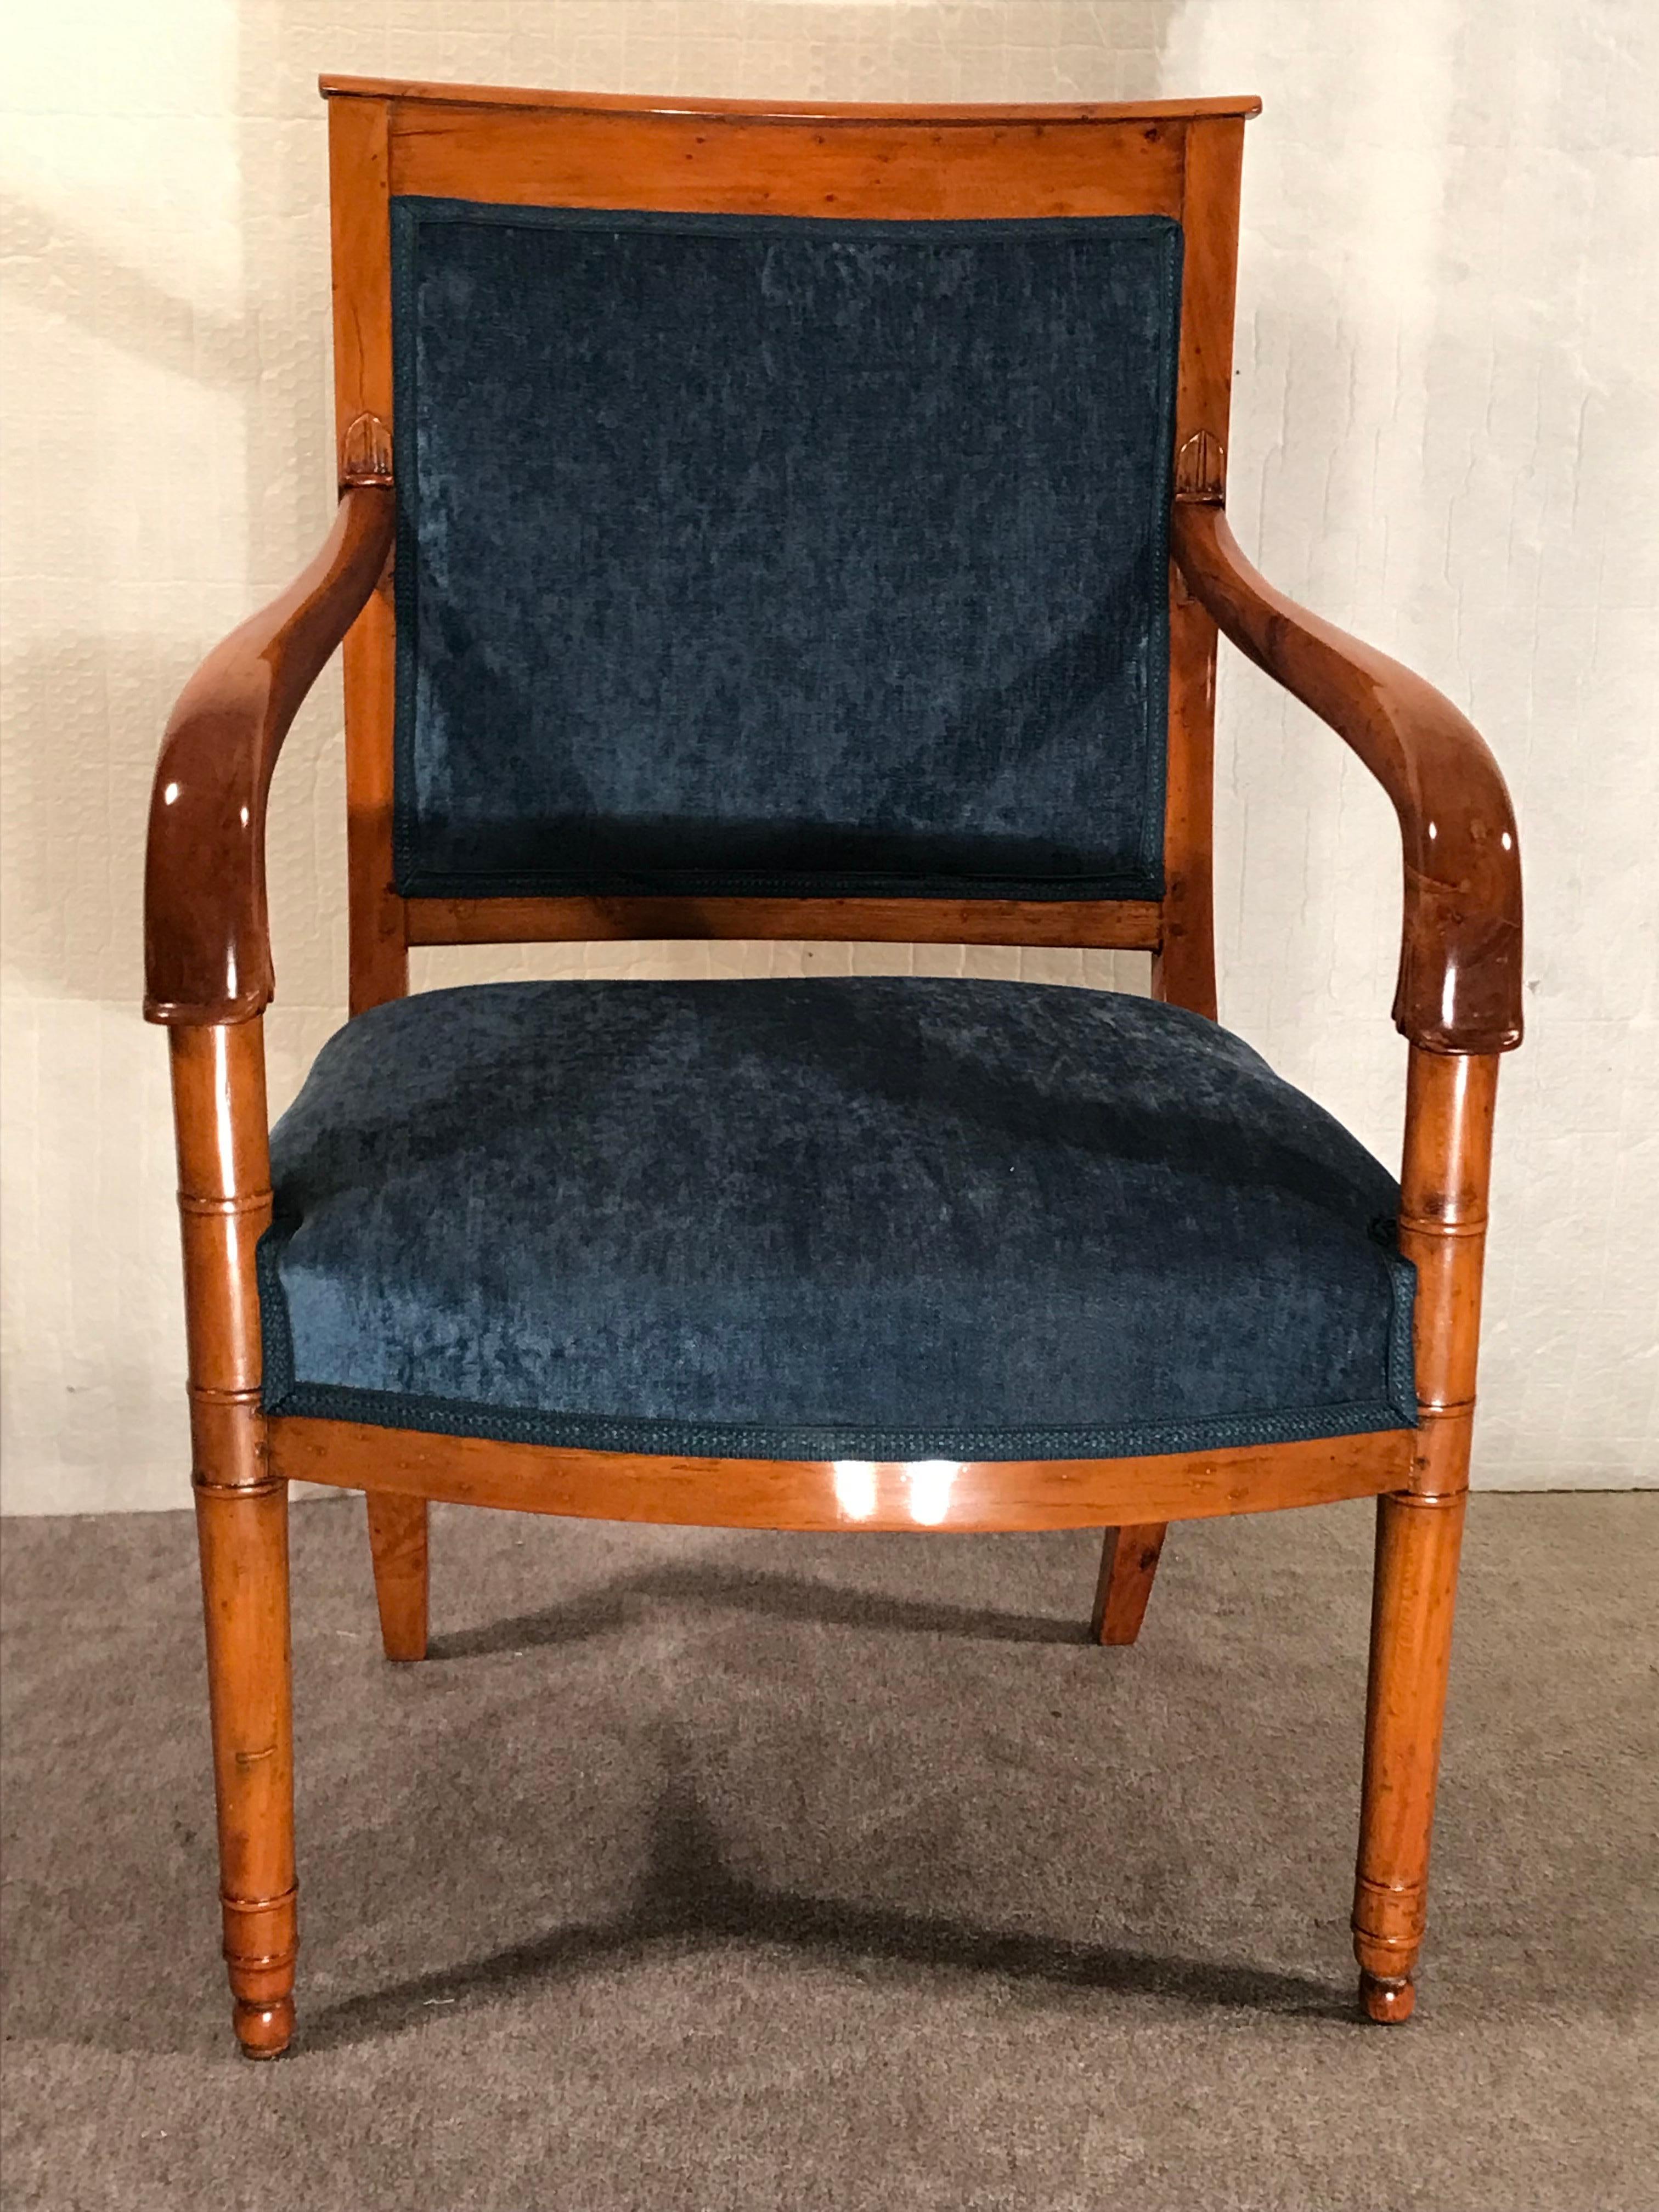 Dieser Satz von vier Empire-Sesseln stammt aus der Zeit um 1810. Die eleganten Sessel haben einen schönen Rahmen aus Kirschholz. Die Armlehne und die vorderen Beine haben ein handgeschnitztes Dekor. Durch ihr schlichtes Design lassen sie sich leicht